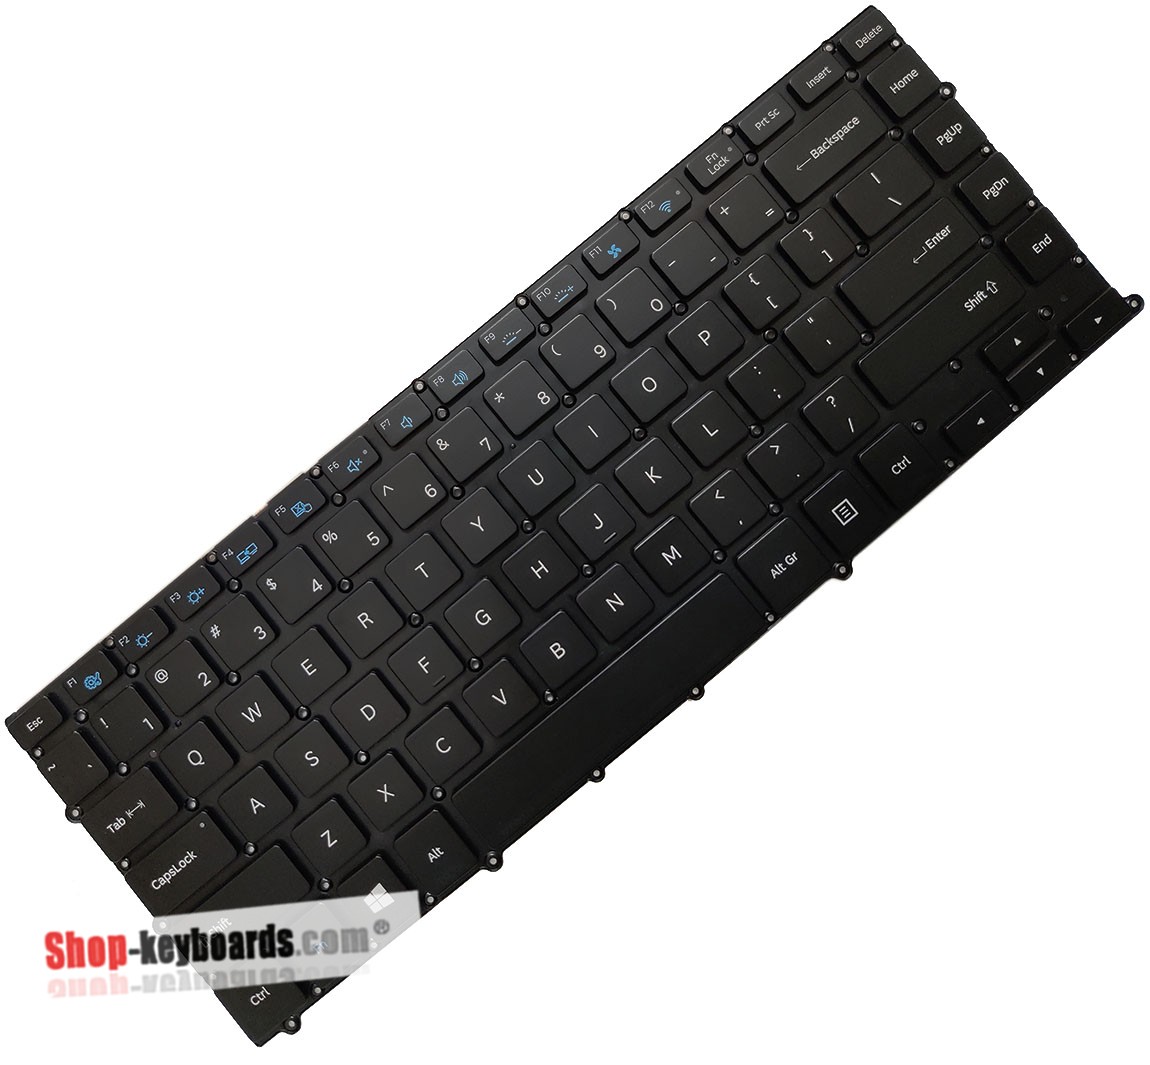 Samsung NP900X4D-A02DE  Keyboard replacement